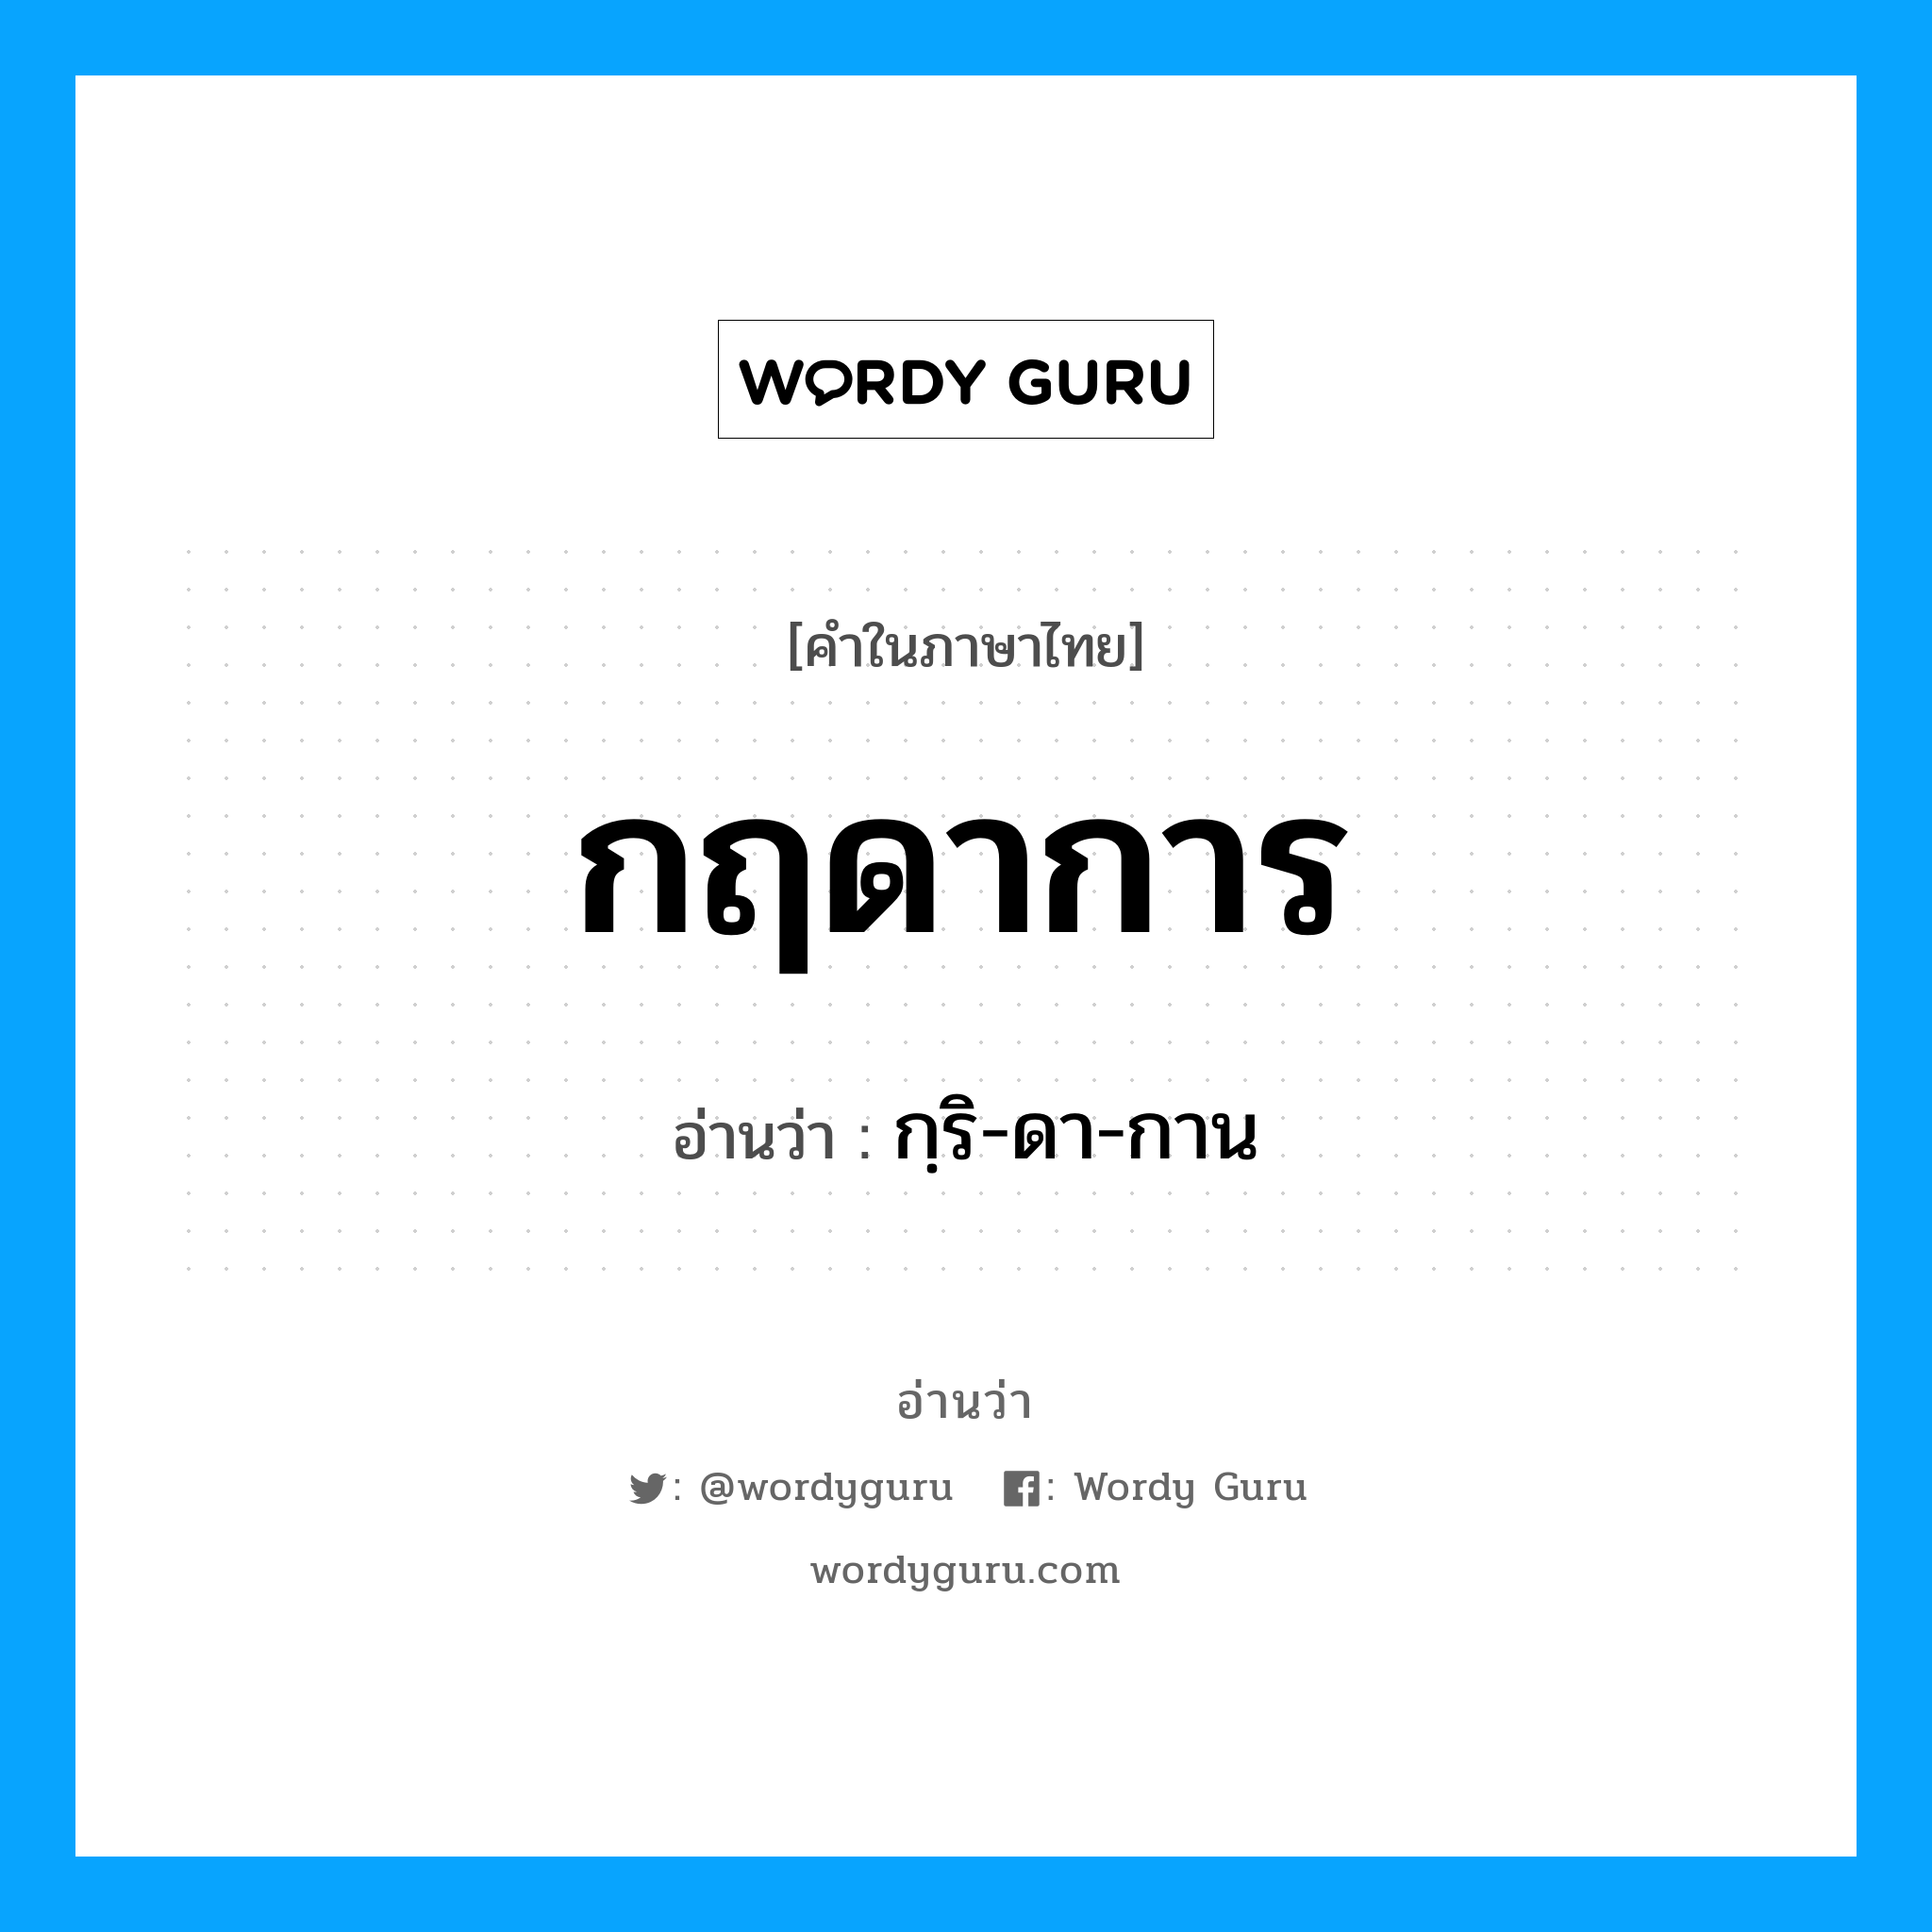 กฺริ-ดา-กาน เป็นคำอ่านของคำไหน?, คำในภาษาไทย กฺริ-ดา-กาน อ่านว่า กฤดาการ